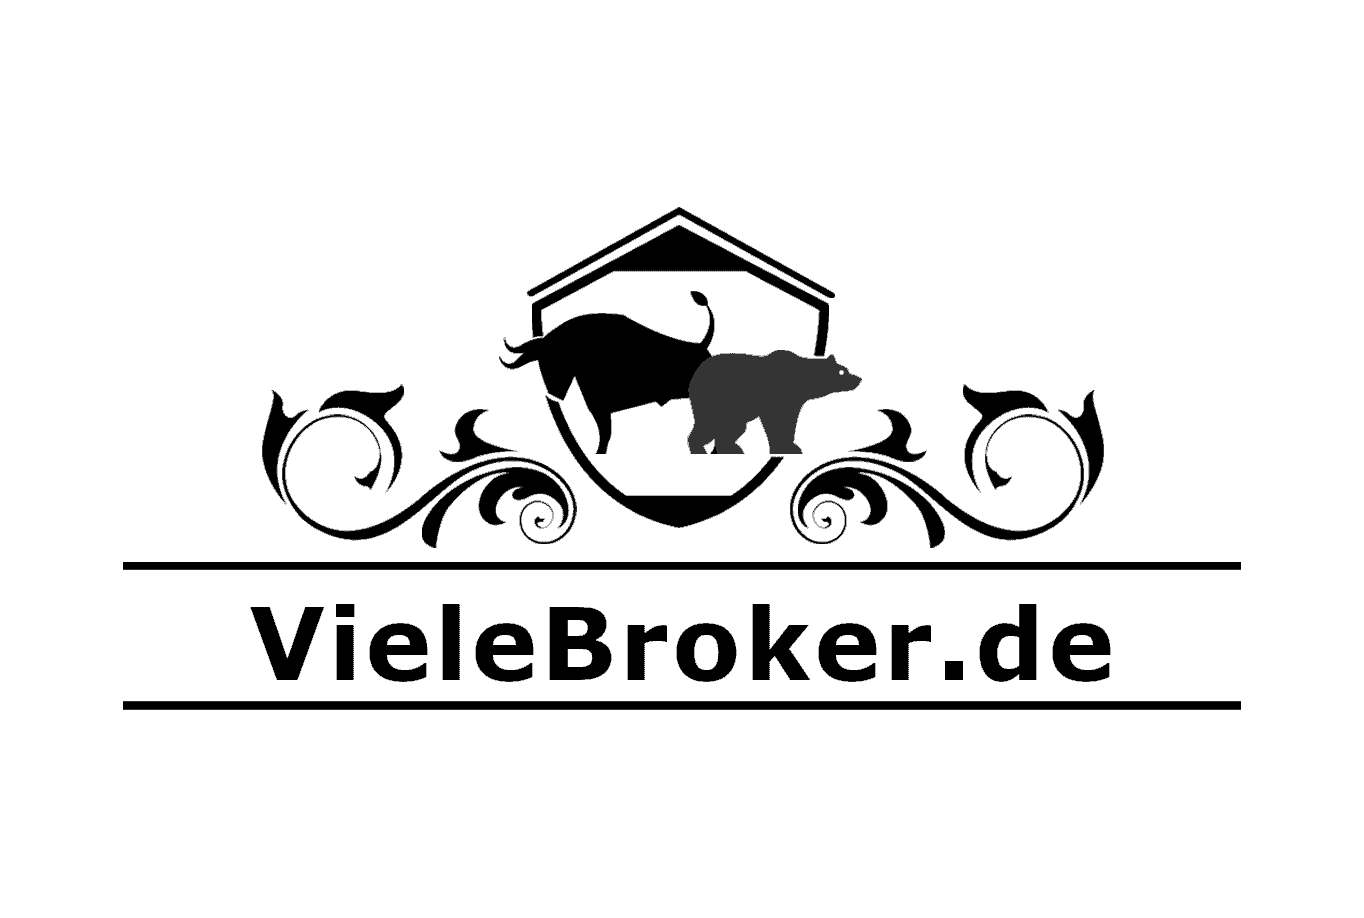 Online Broker Vergleich für Deutschland auf VieleBroker.de